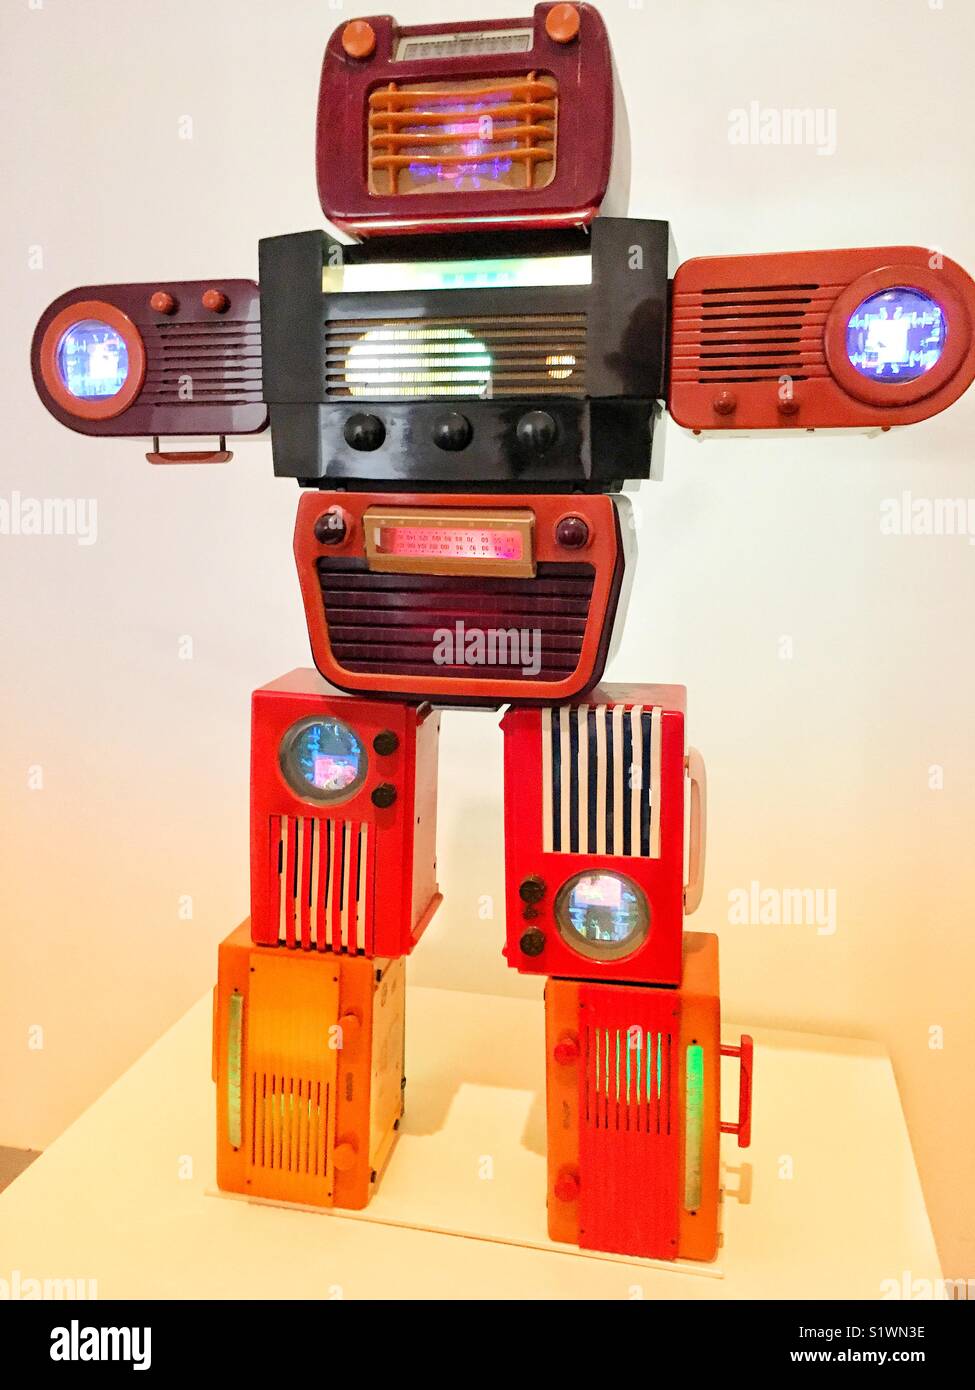 Robot classica fatta di vintage radio a transistor Foto Stock